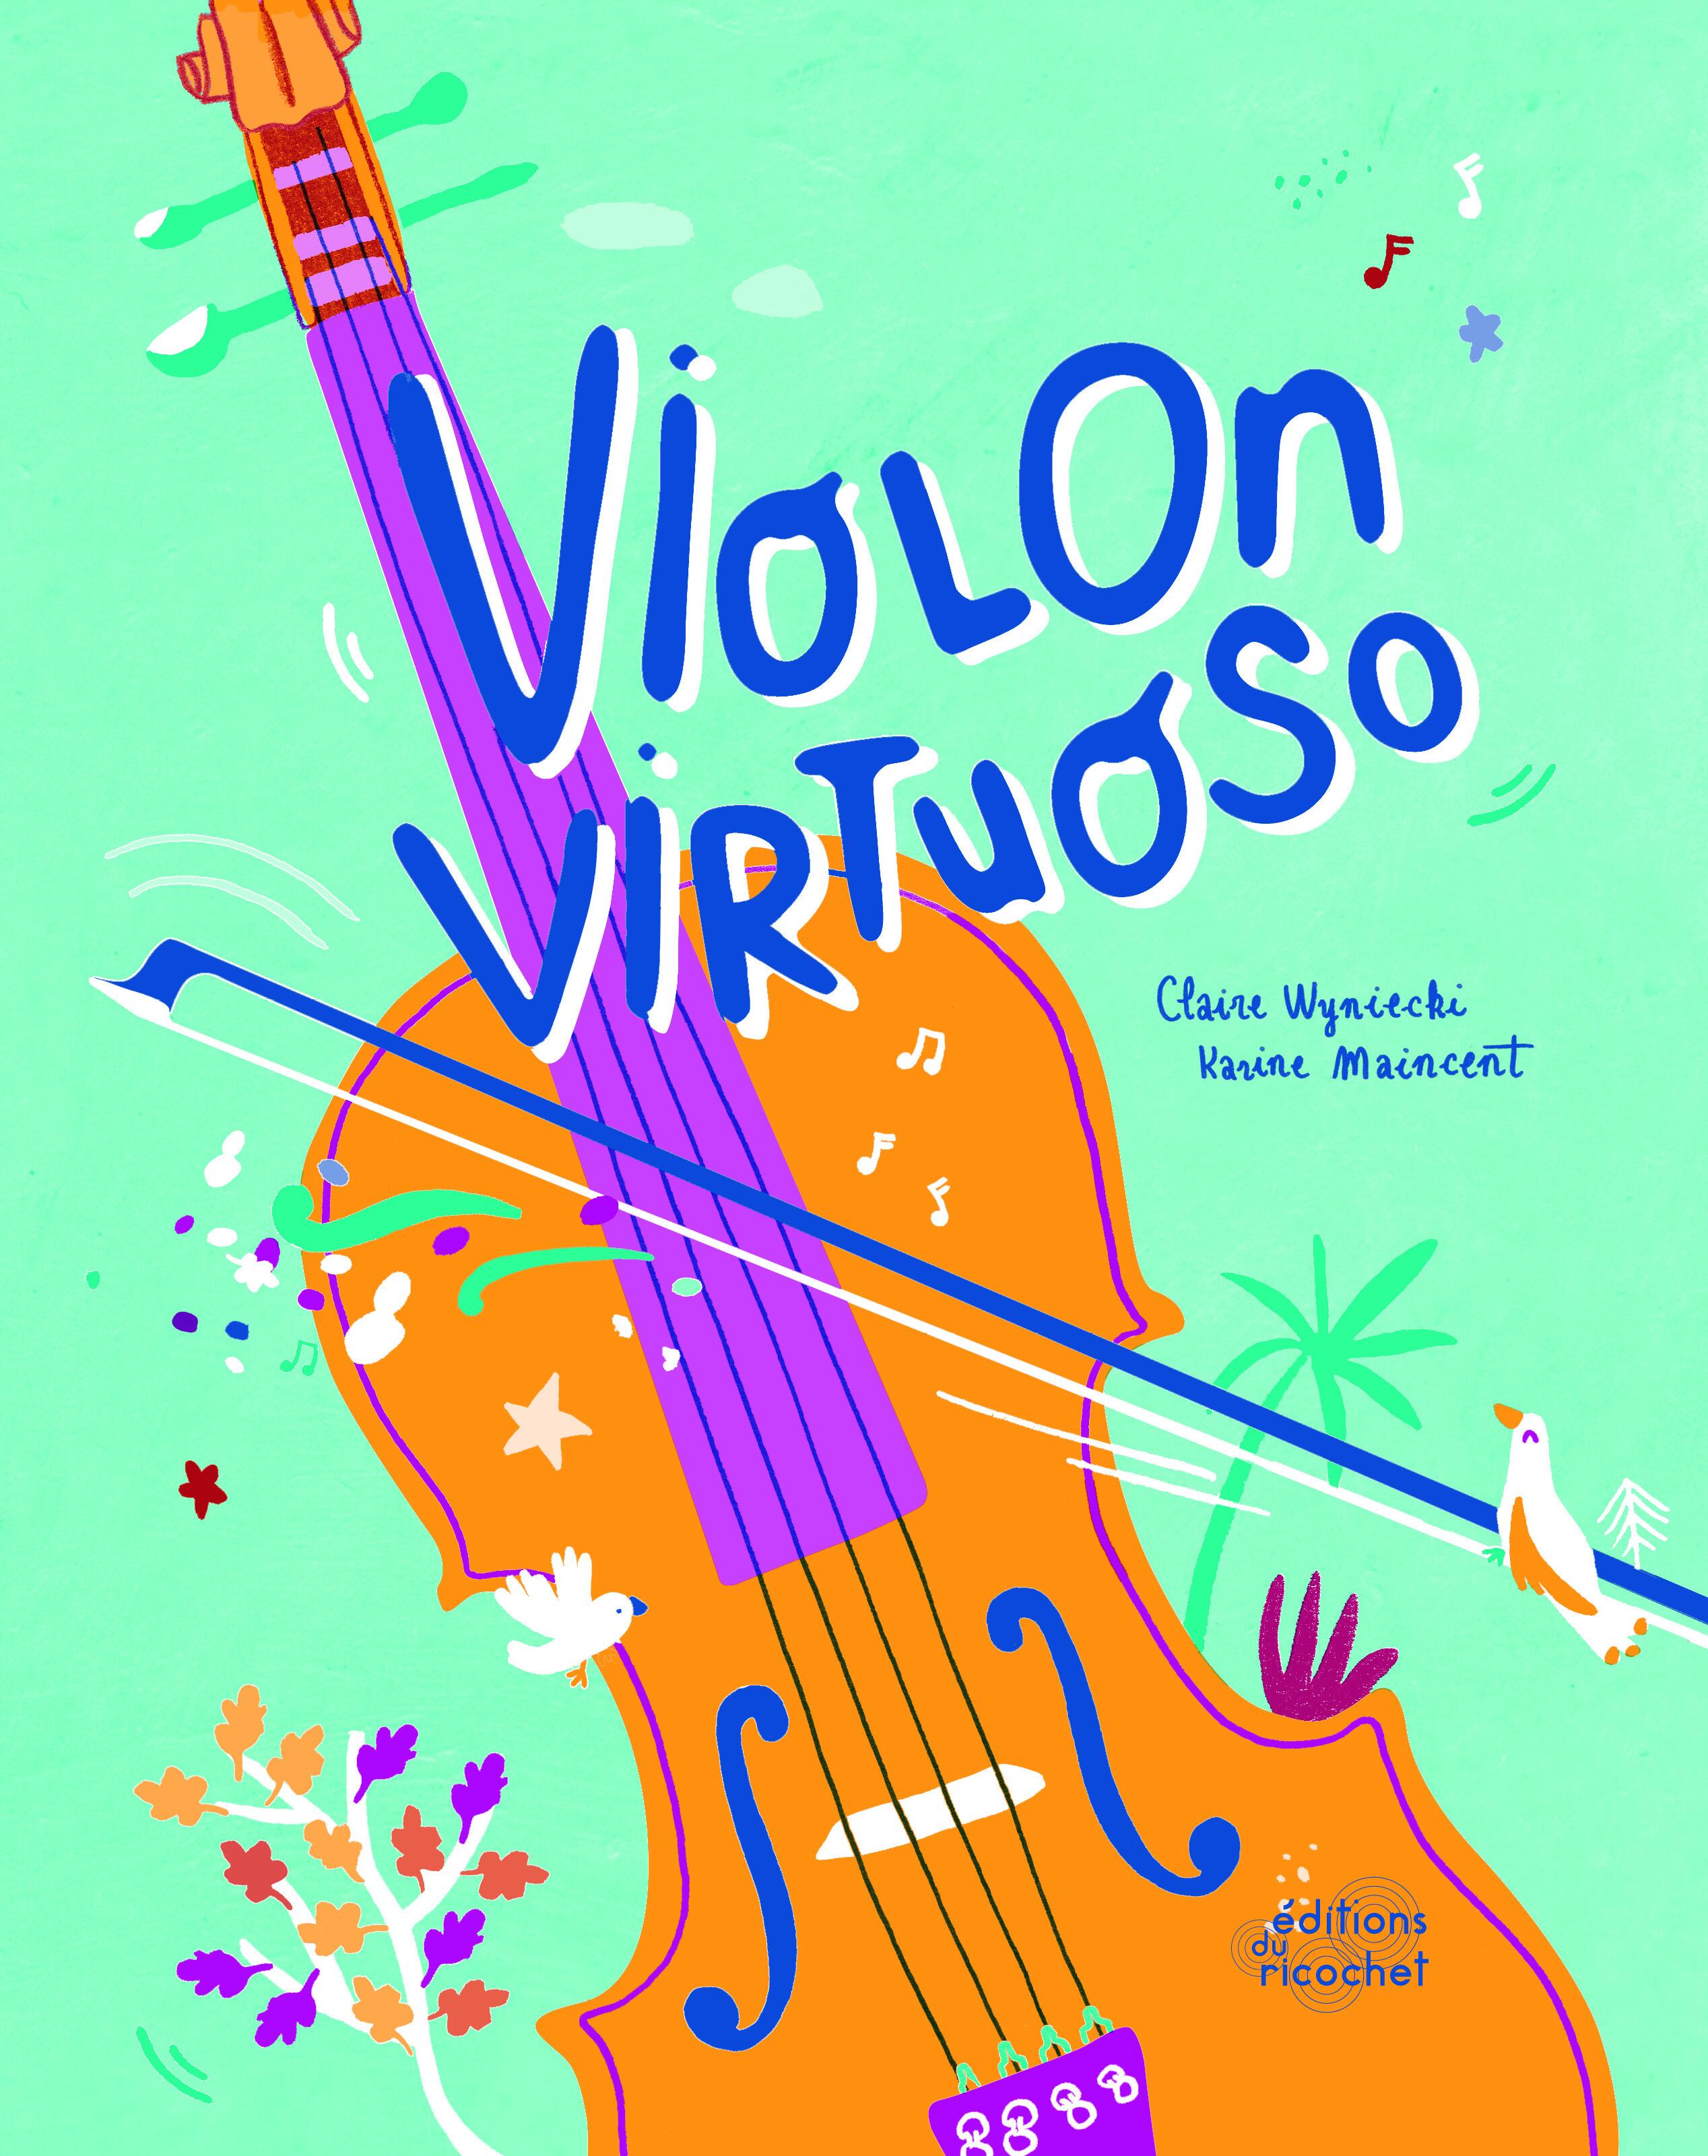 Violon Virtuoso